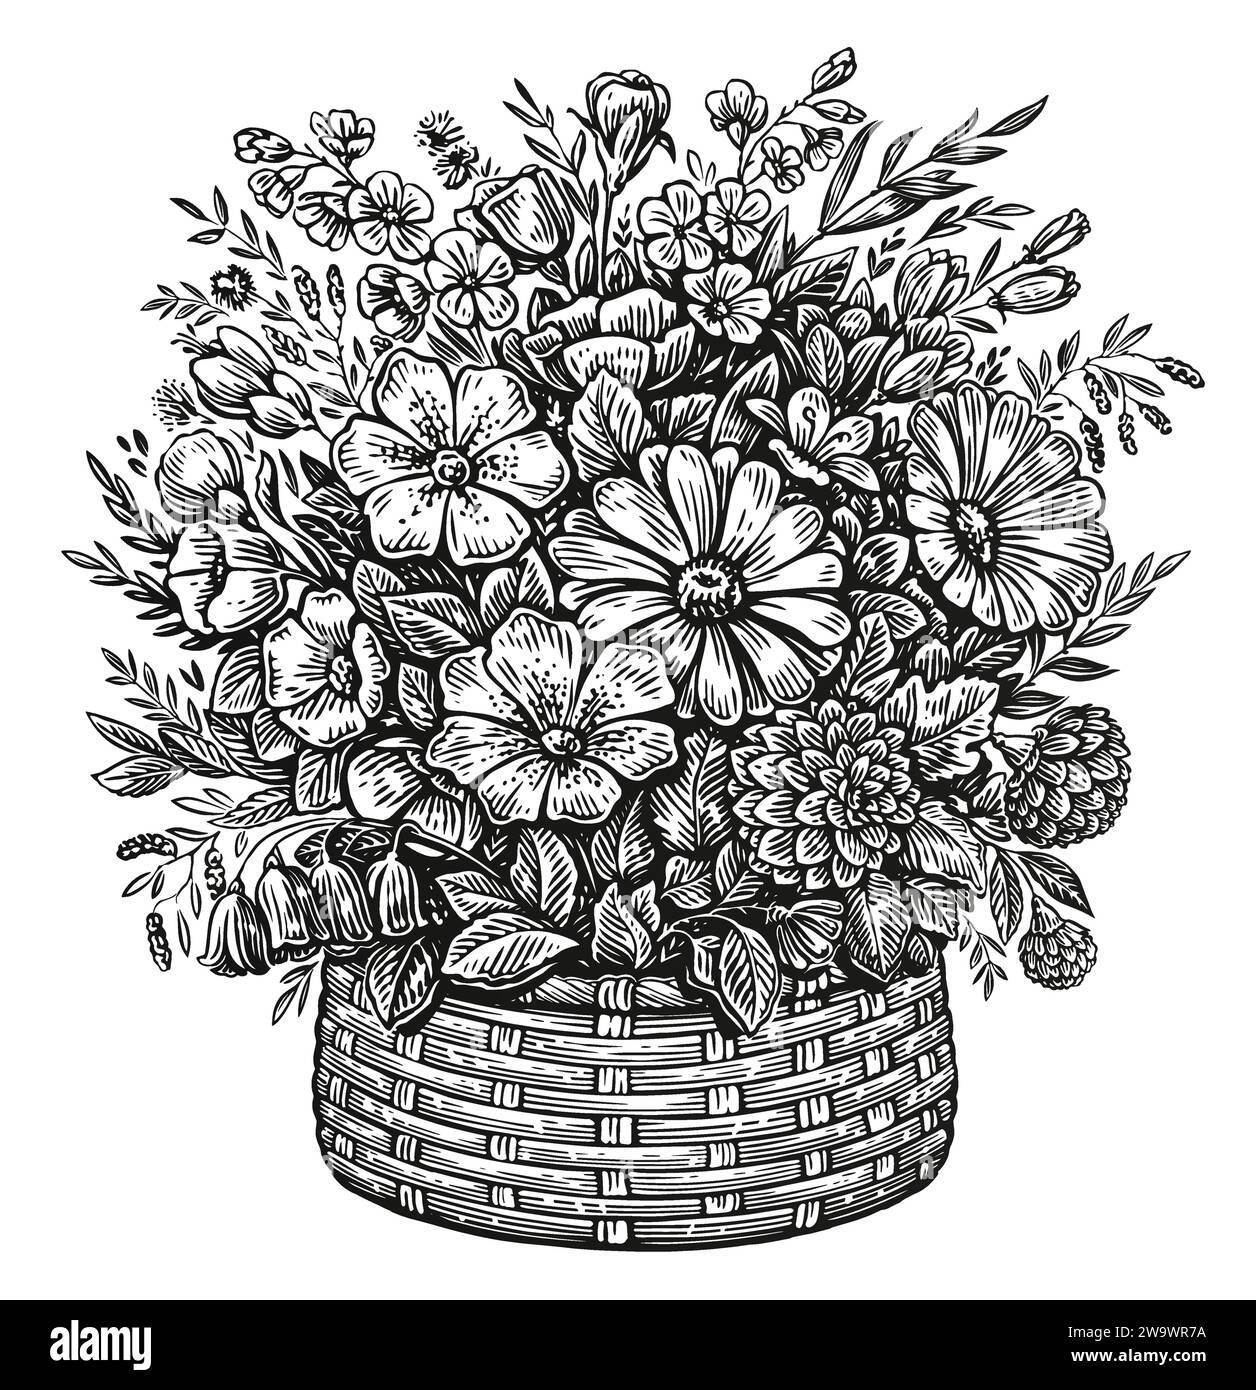 Abbildung der Skizze mit Blumenanordnung. Handgezeichneter Korb mit Wildblumen im Vintage-Gravurstil Stock Vektor